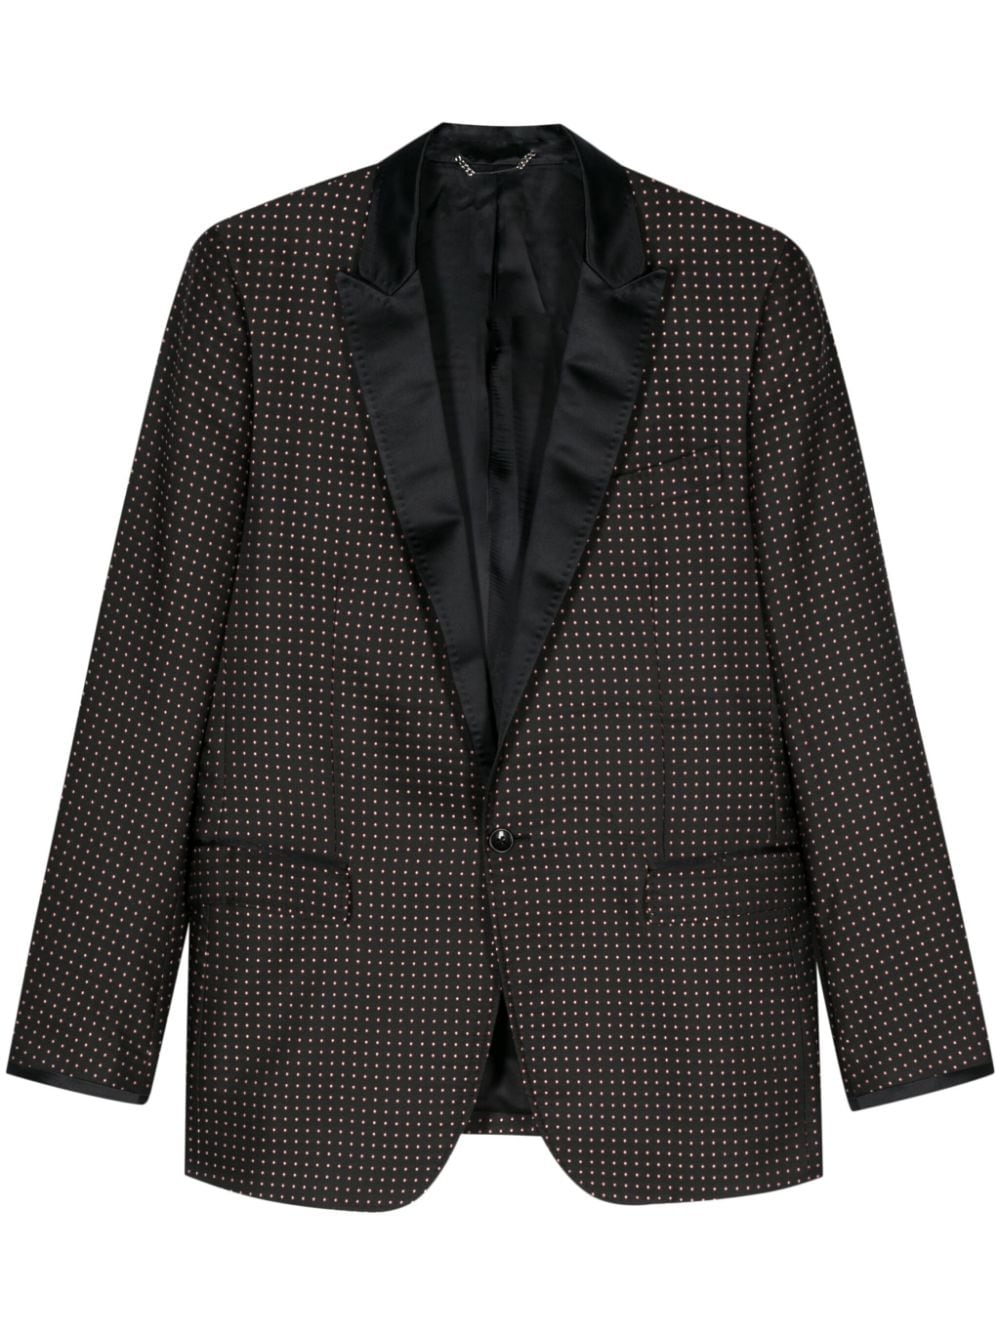 1990s patterned-jacquard blazer